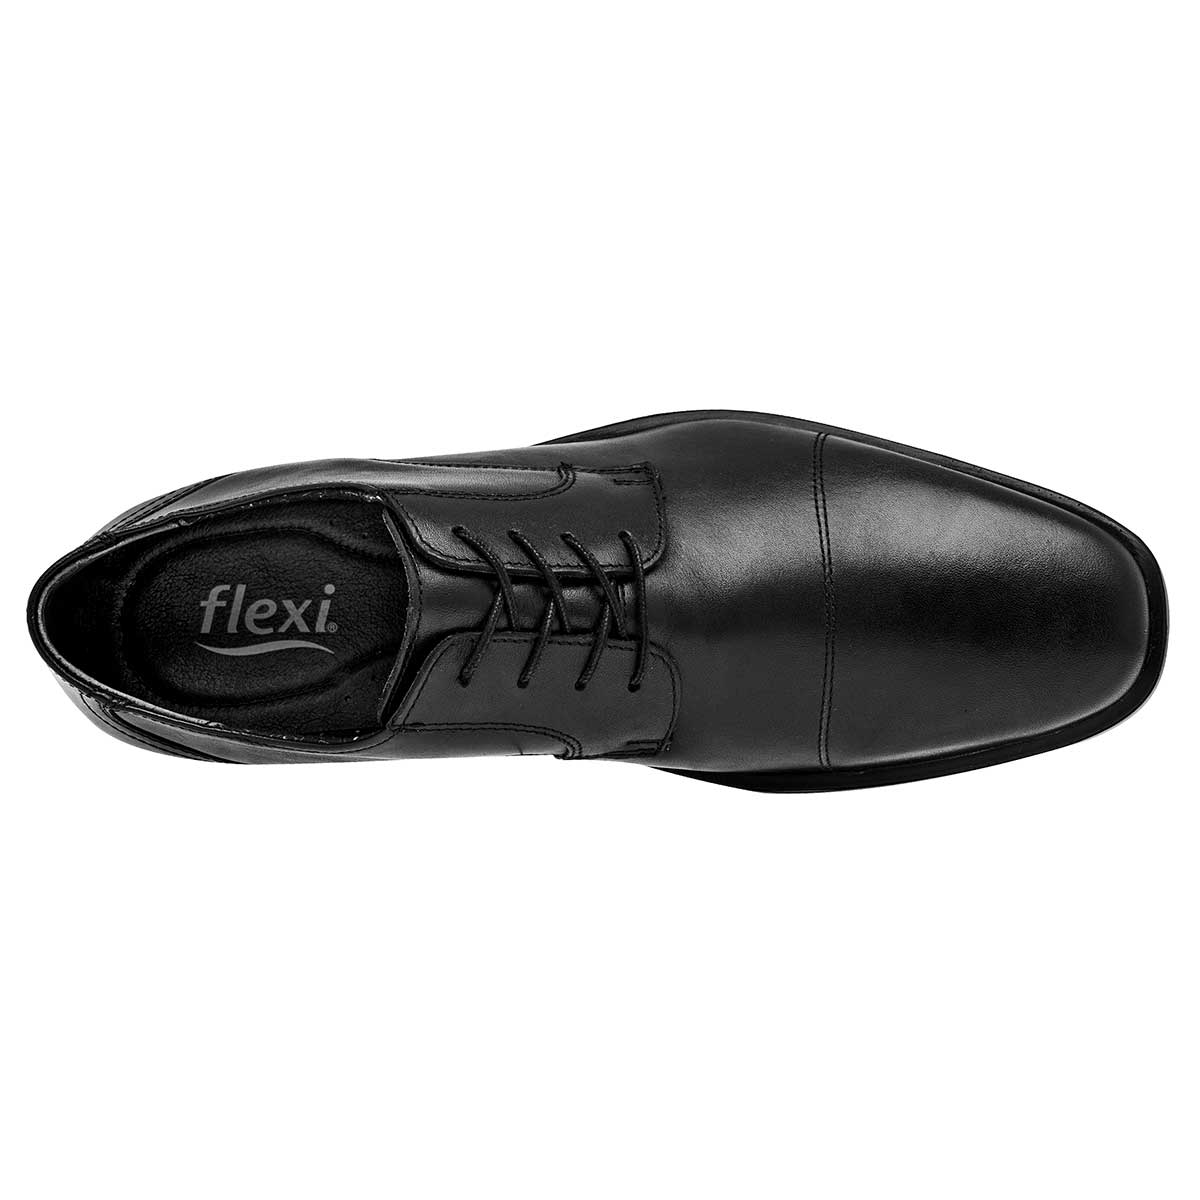 Rockport Zapatos oxford hombre - Compra online a los mejores precios